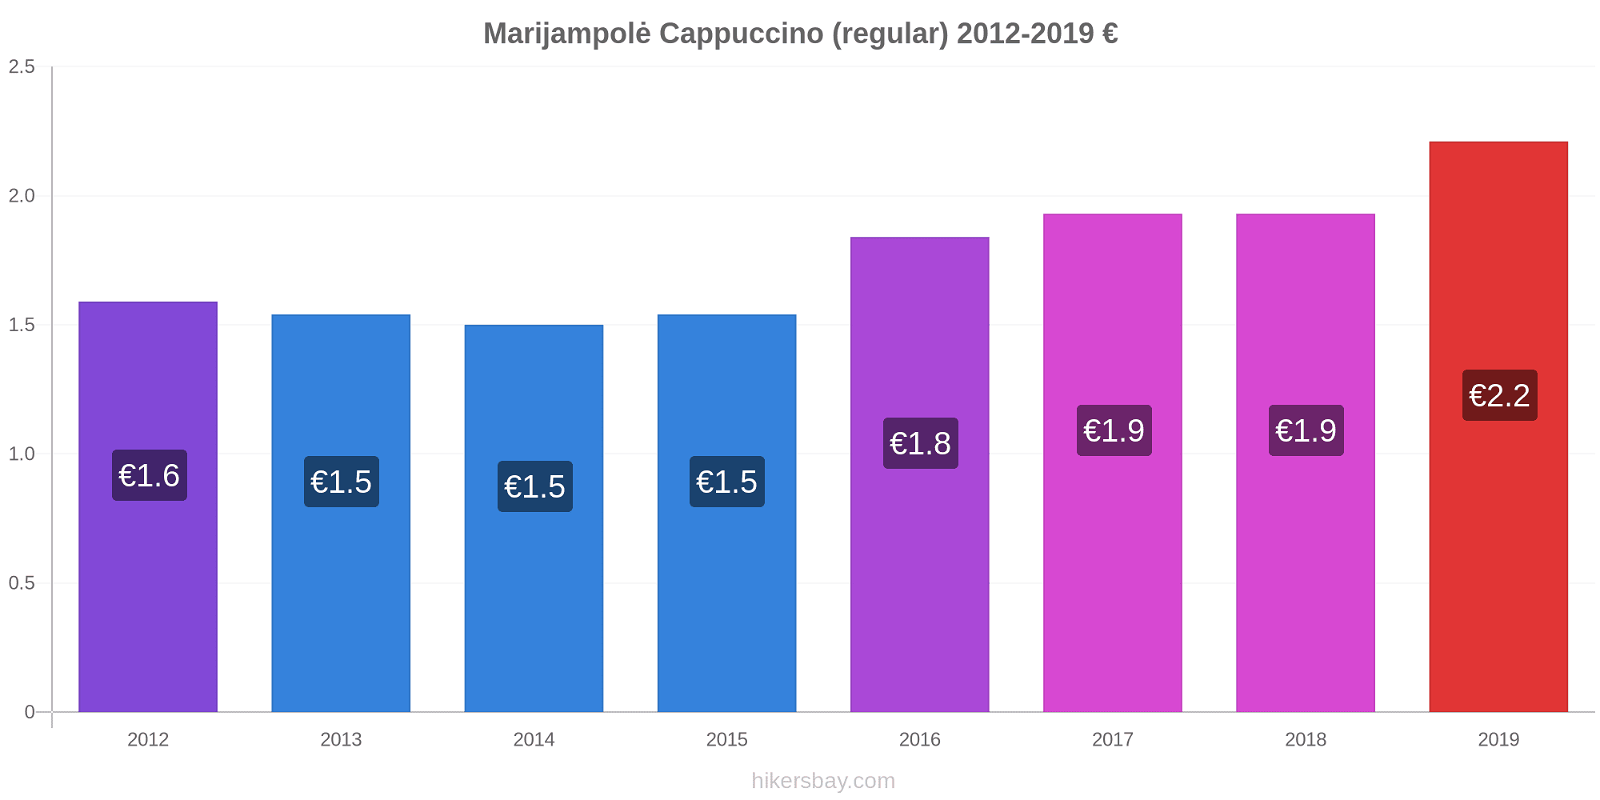 Marijampolė price changes Cappuccino (regular) hikersbay.com